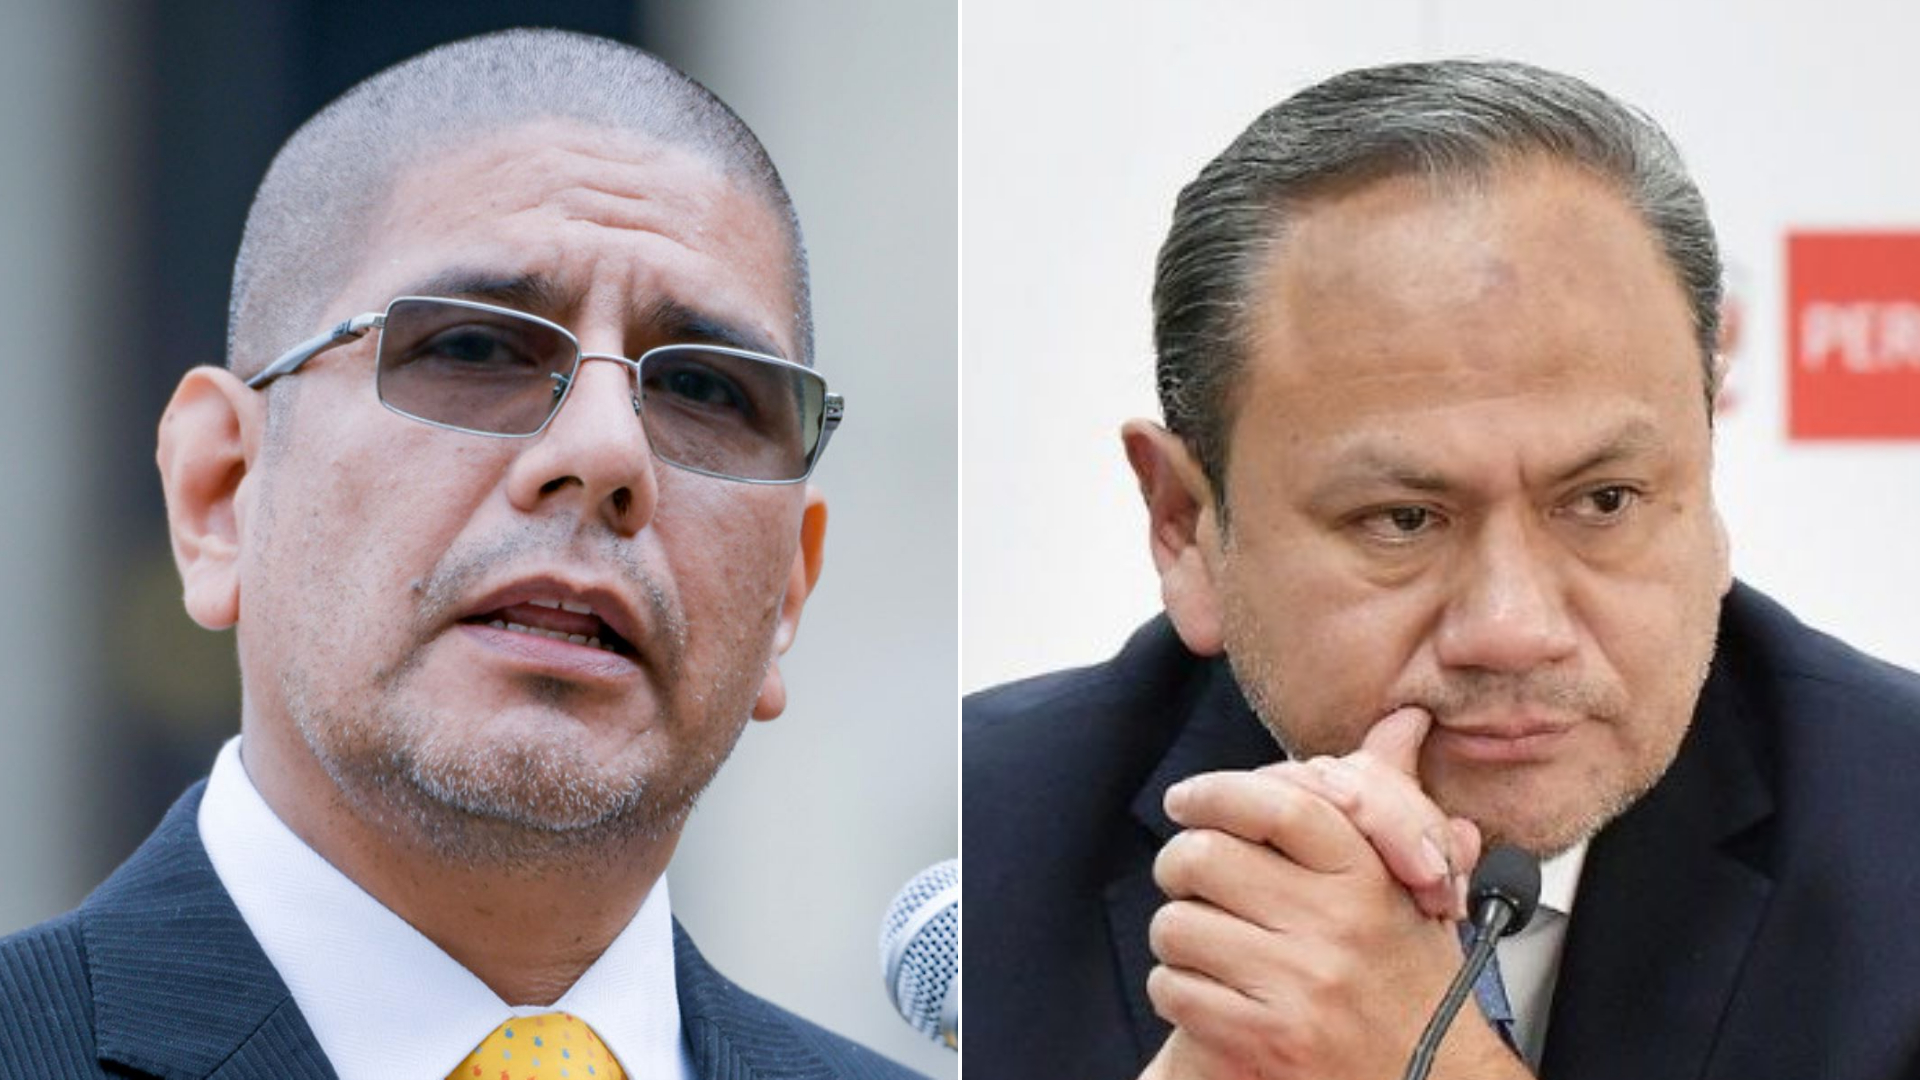 Dimitri Senmache negó haber intervenido en la salida del exministro Mariano González: “Es una falsedad, una mentira”